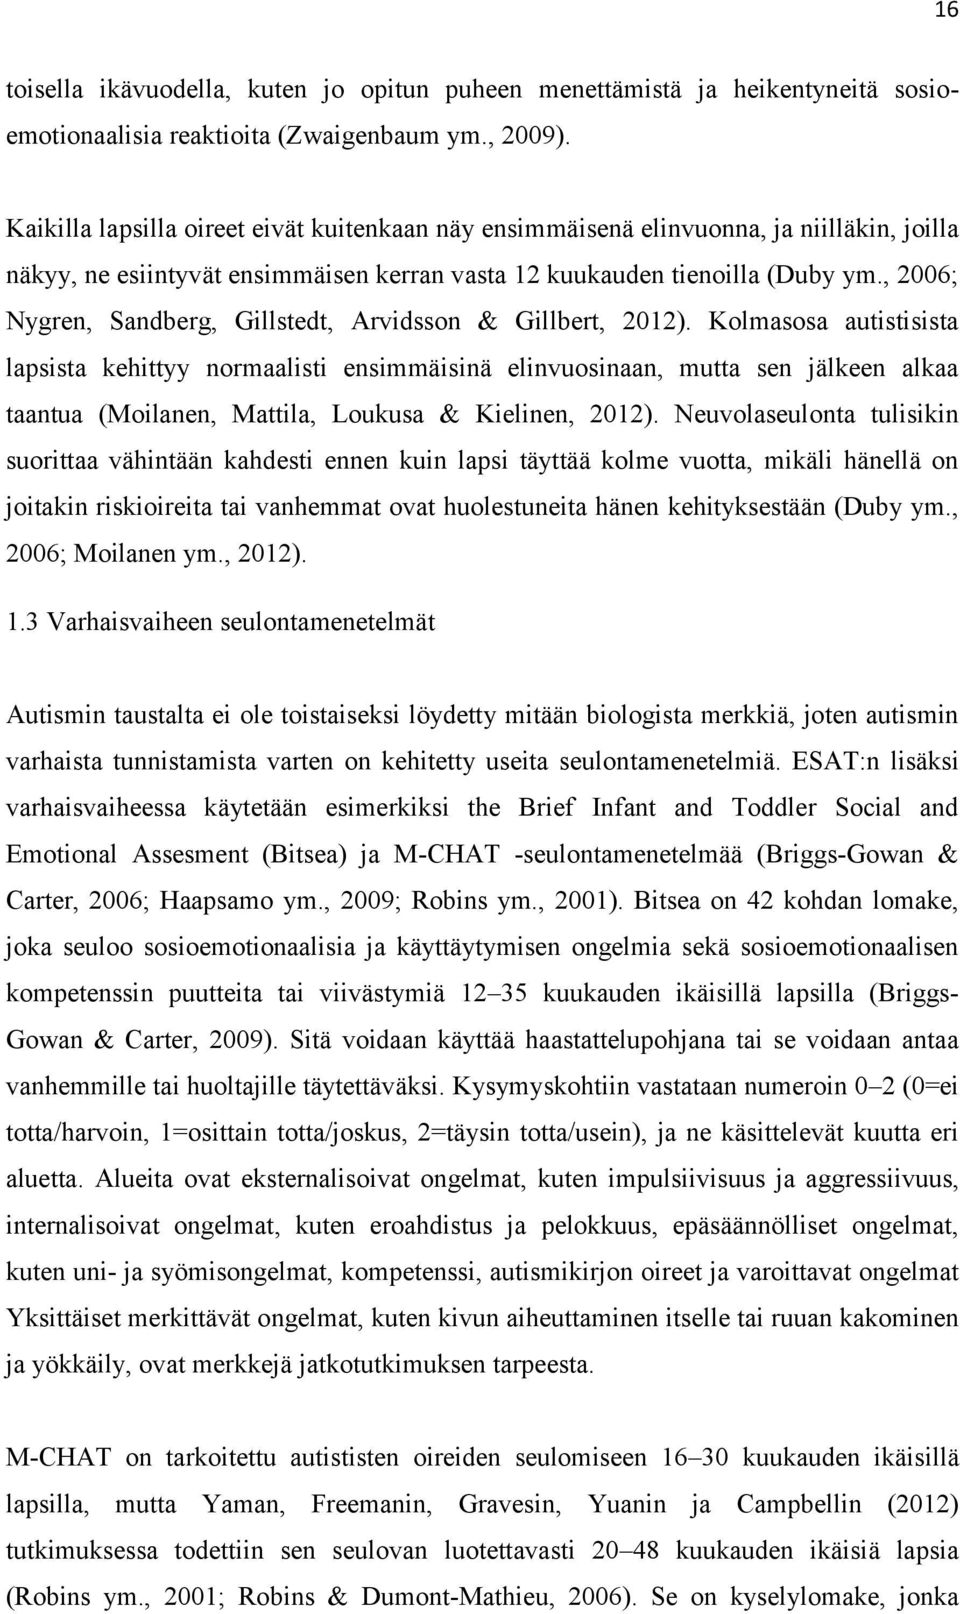 , 2006; Nygren, Sandberg, Gillstedt, Arvidsson & Gillbert, 2012).